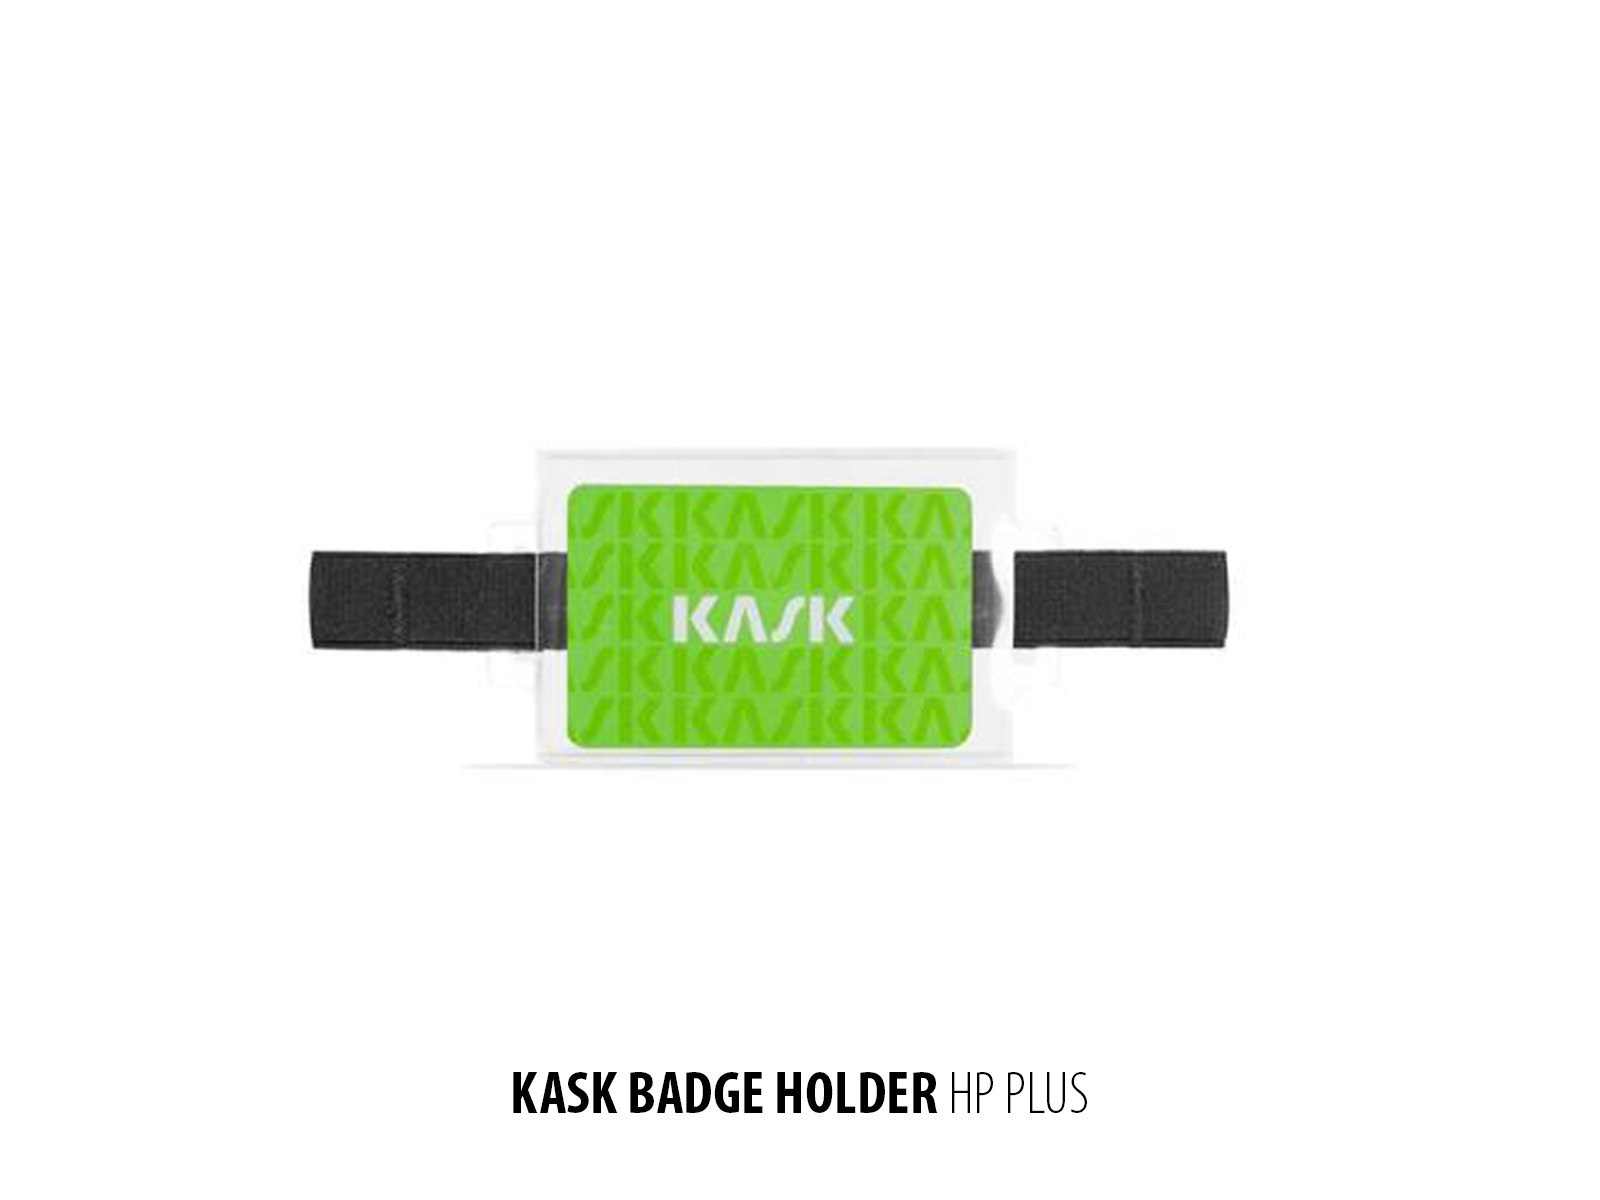 Kask-Badge-Holder-HP-Plus.jpg